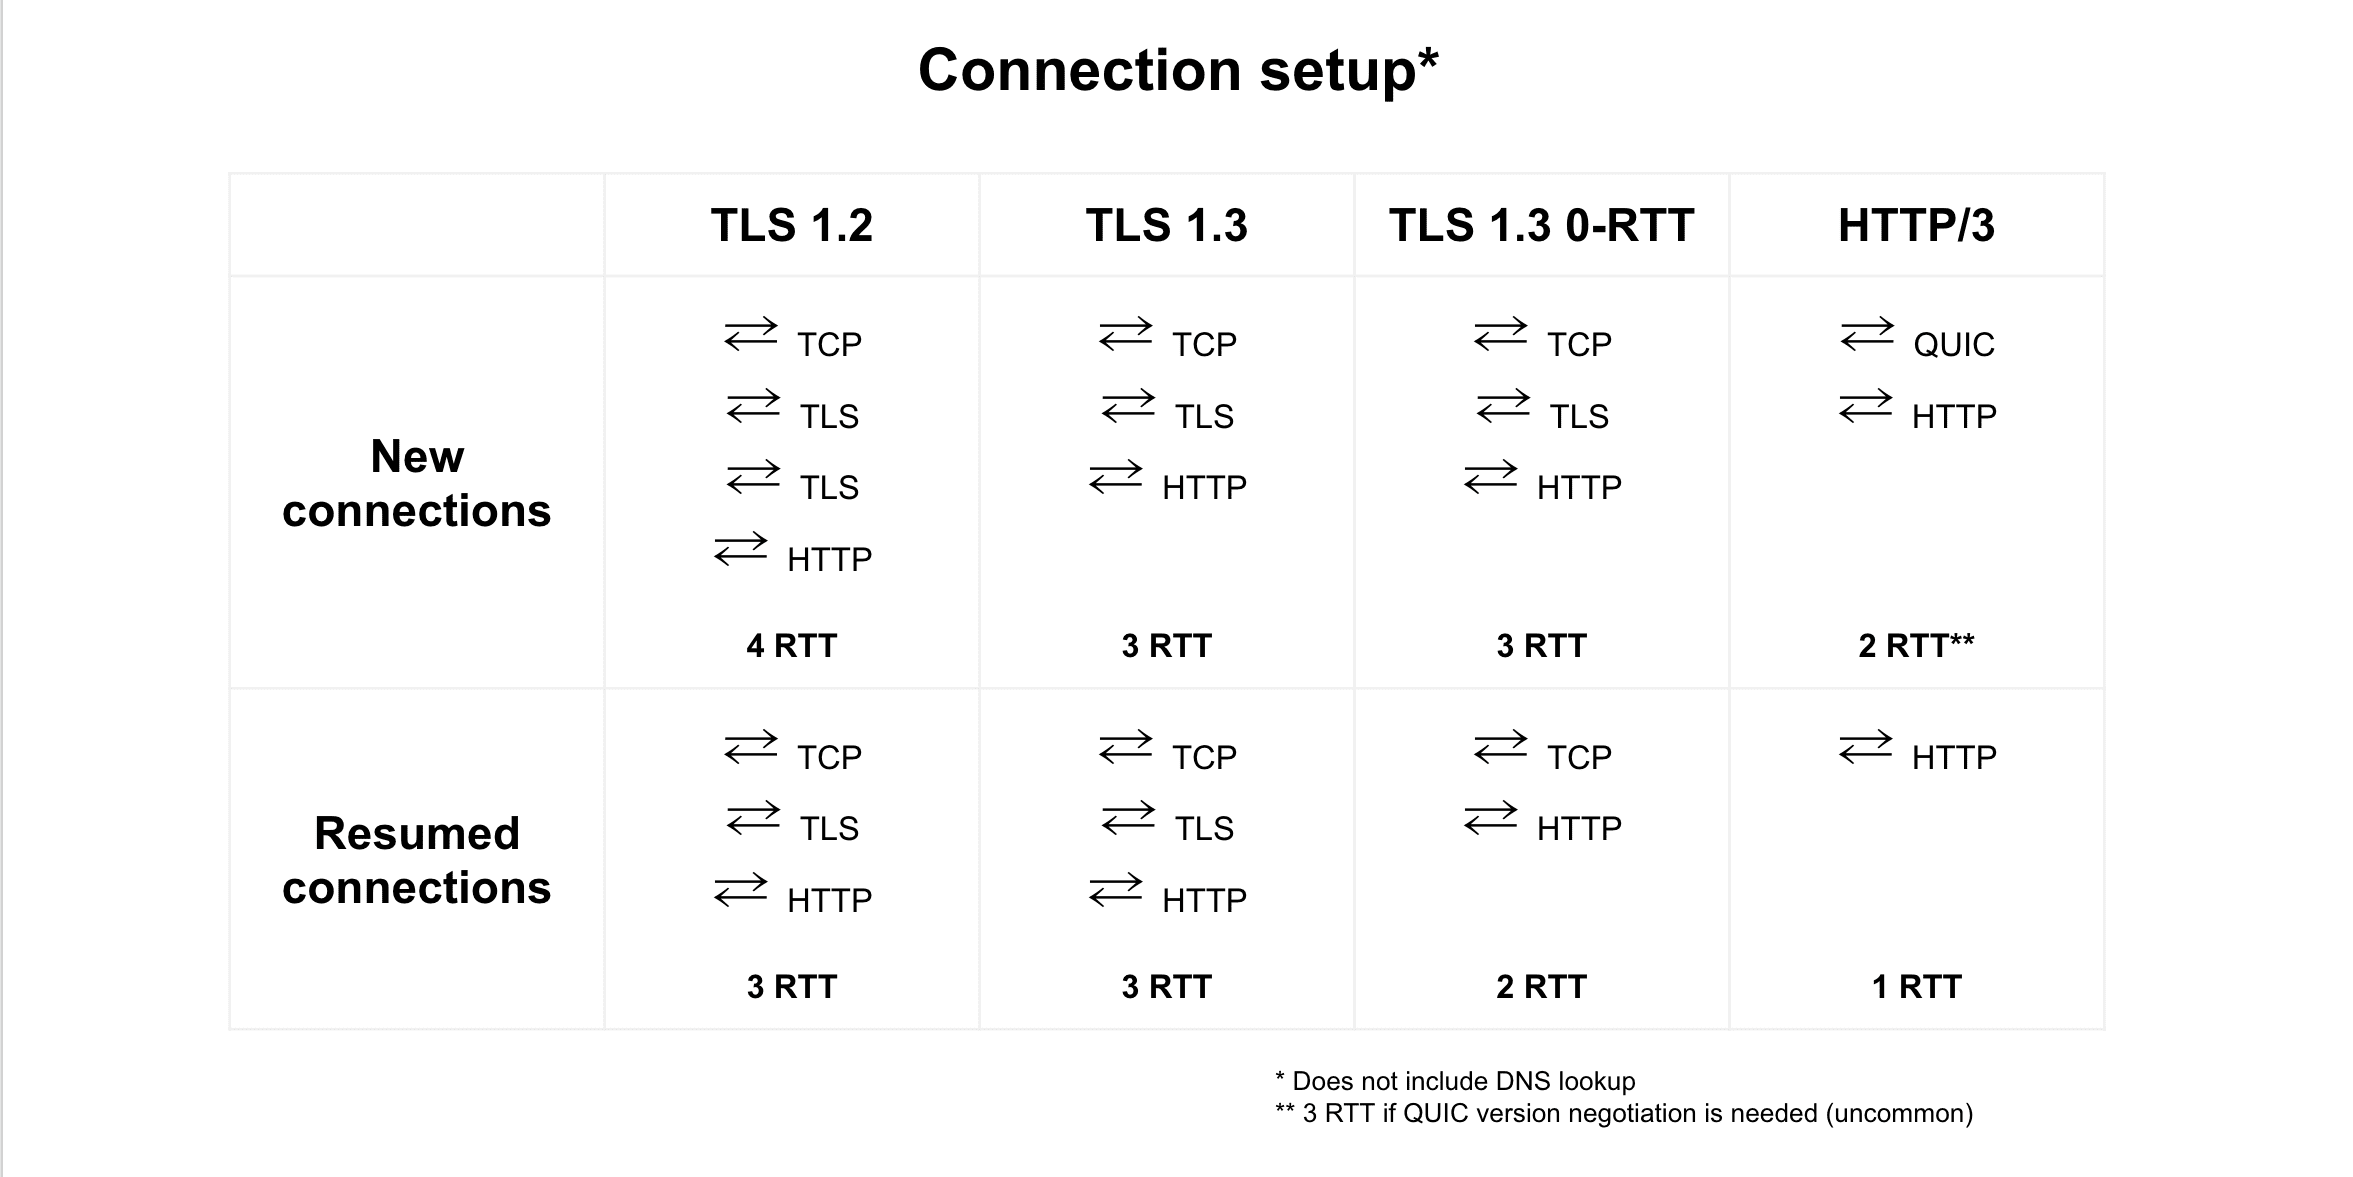 Vergleich der Verbindungswiederaufnahme zwischen TLS 1.2, TLS 1.3, TLS 1.3 0-RTT und HTTP/3